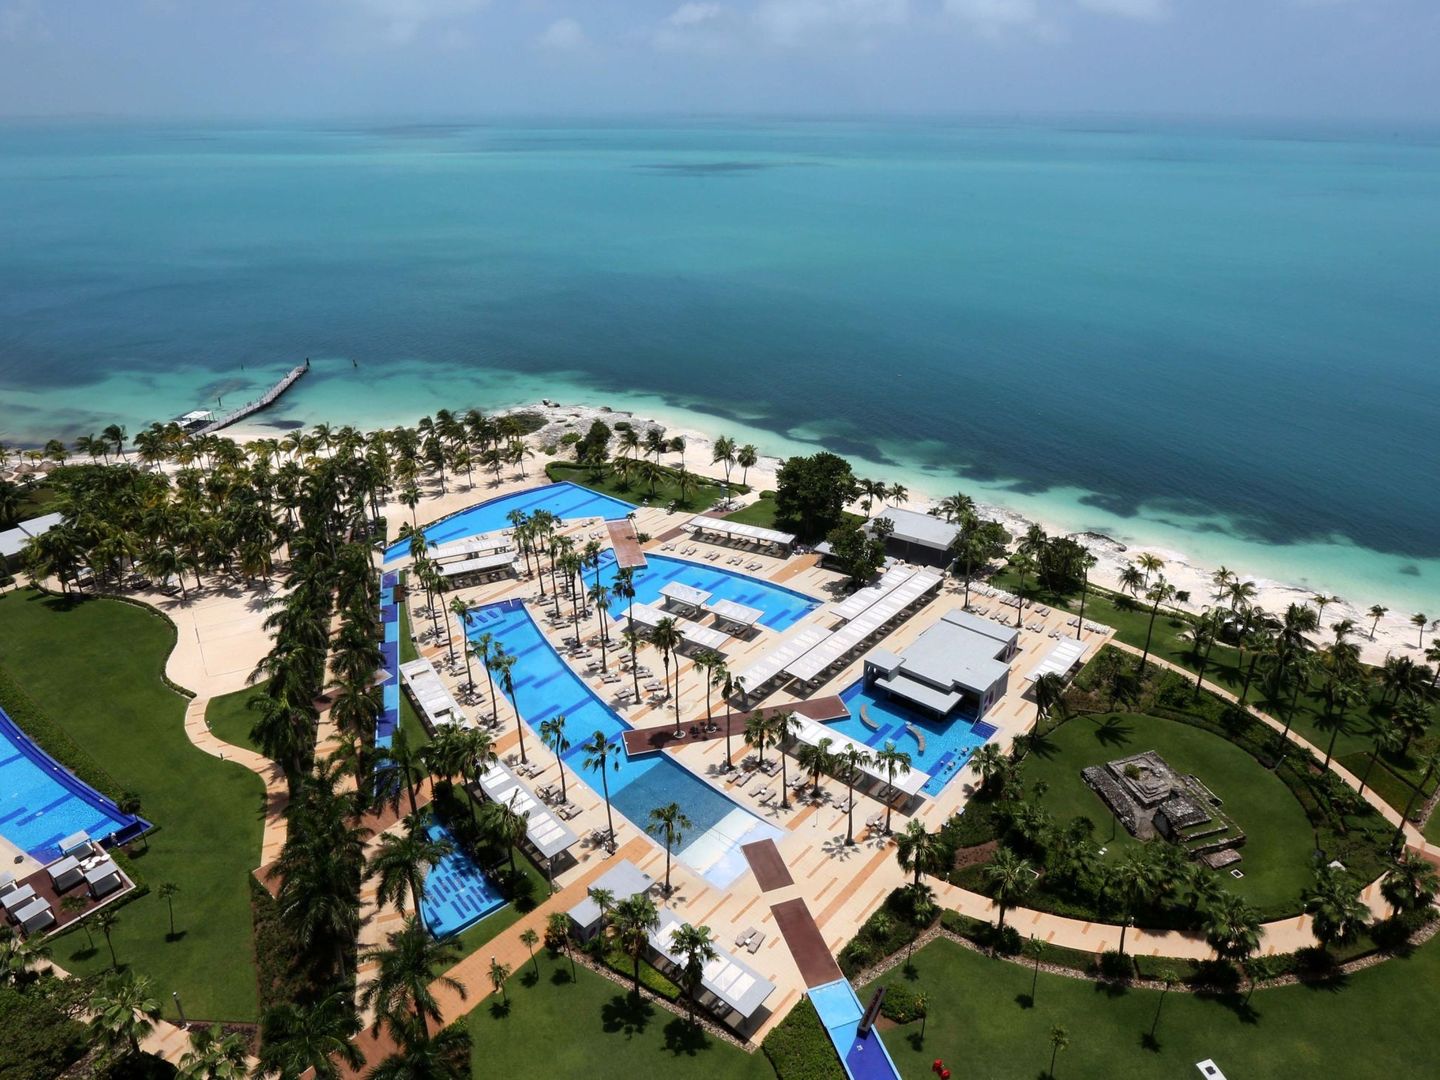 Vista desde una habitación del Hotel RIU Palace Península, en Cancún Quintana Roo. (México)